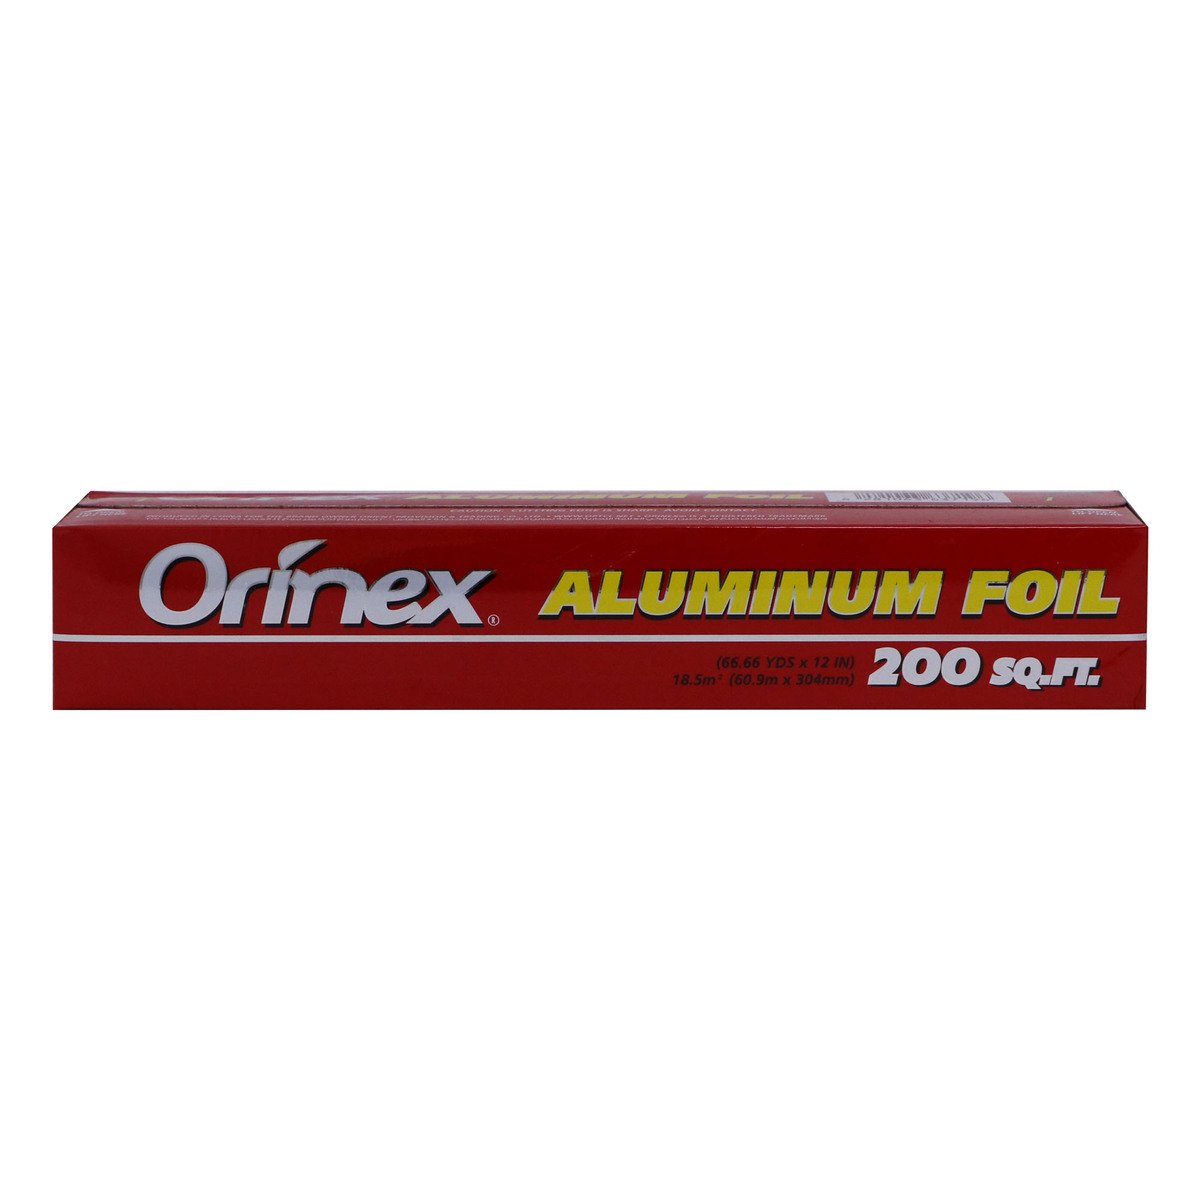 Orinex Aluminum Foil 200sq.ft Size 60.9m x 304mm 1 pc